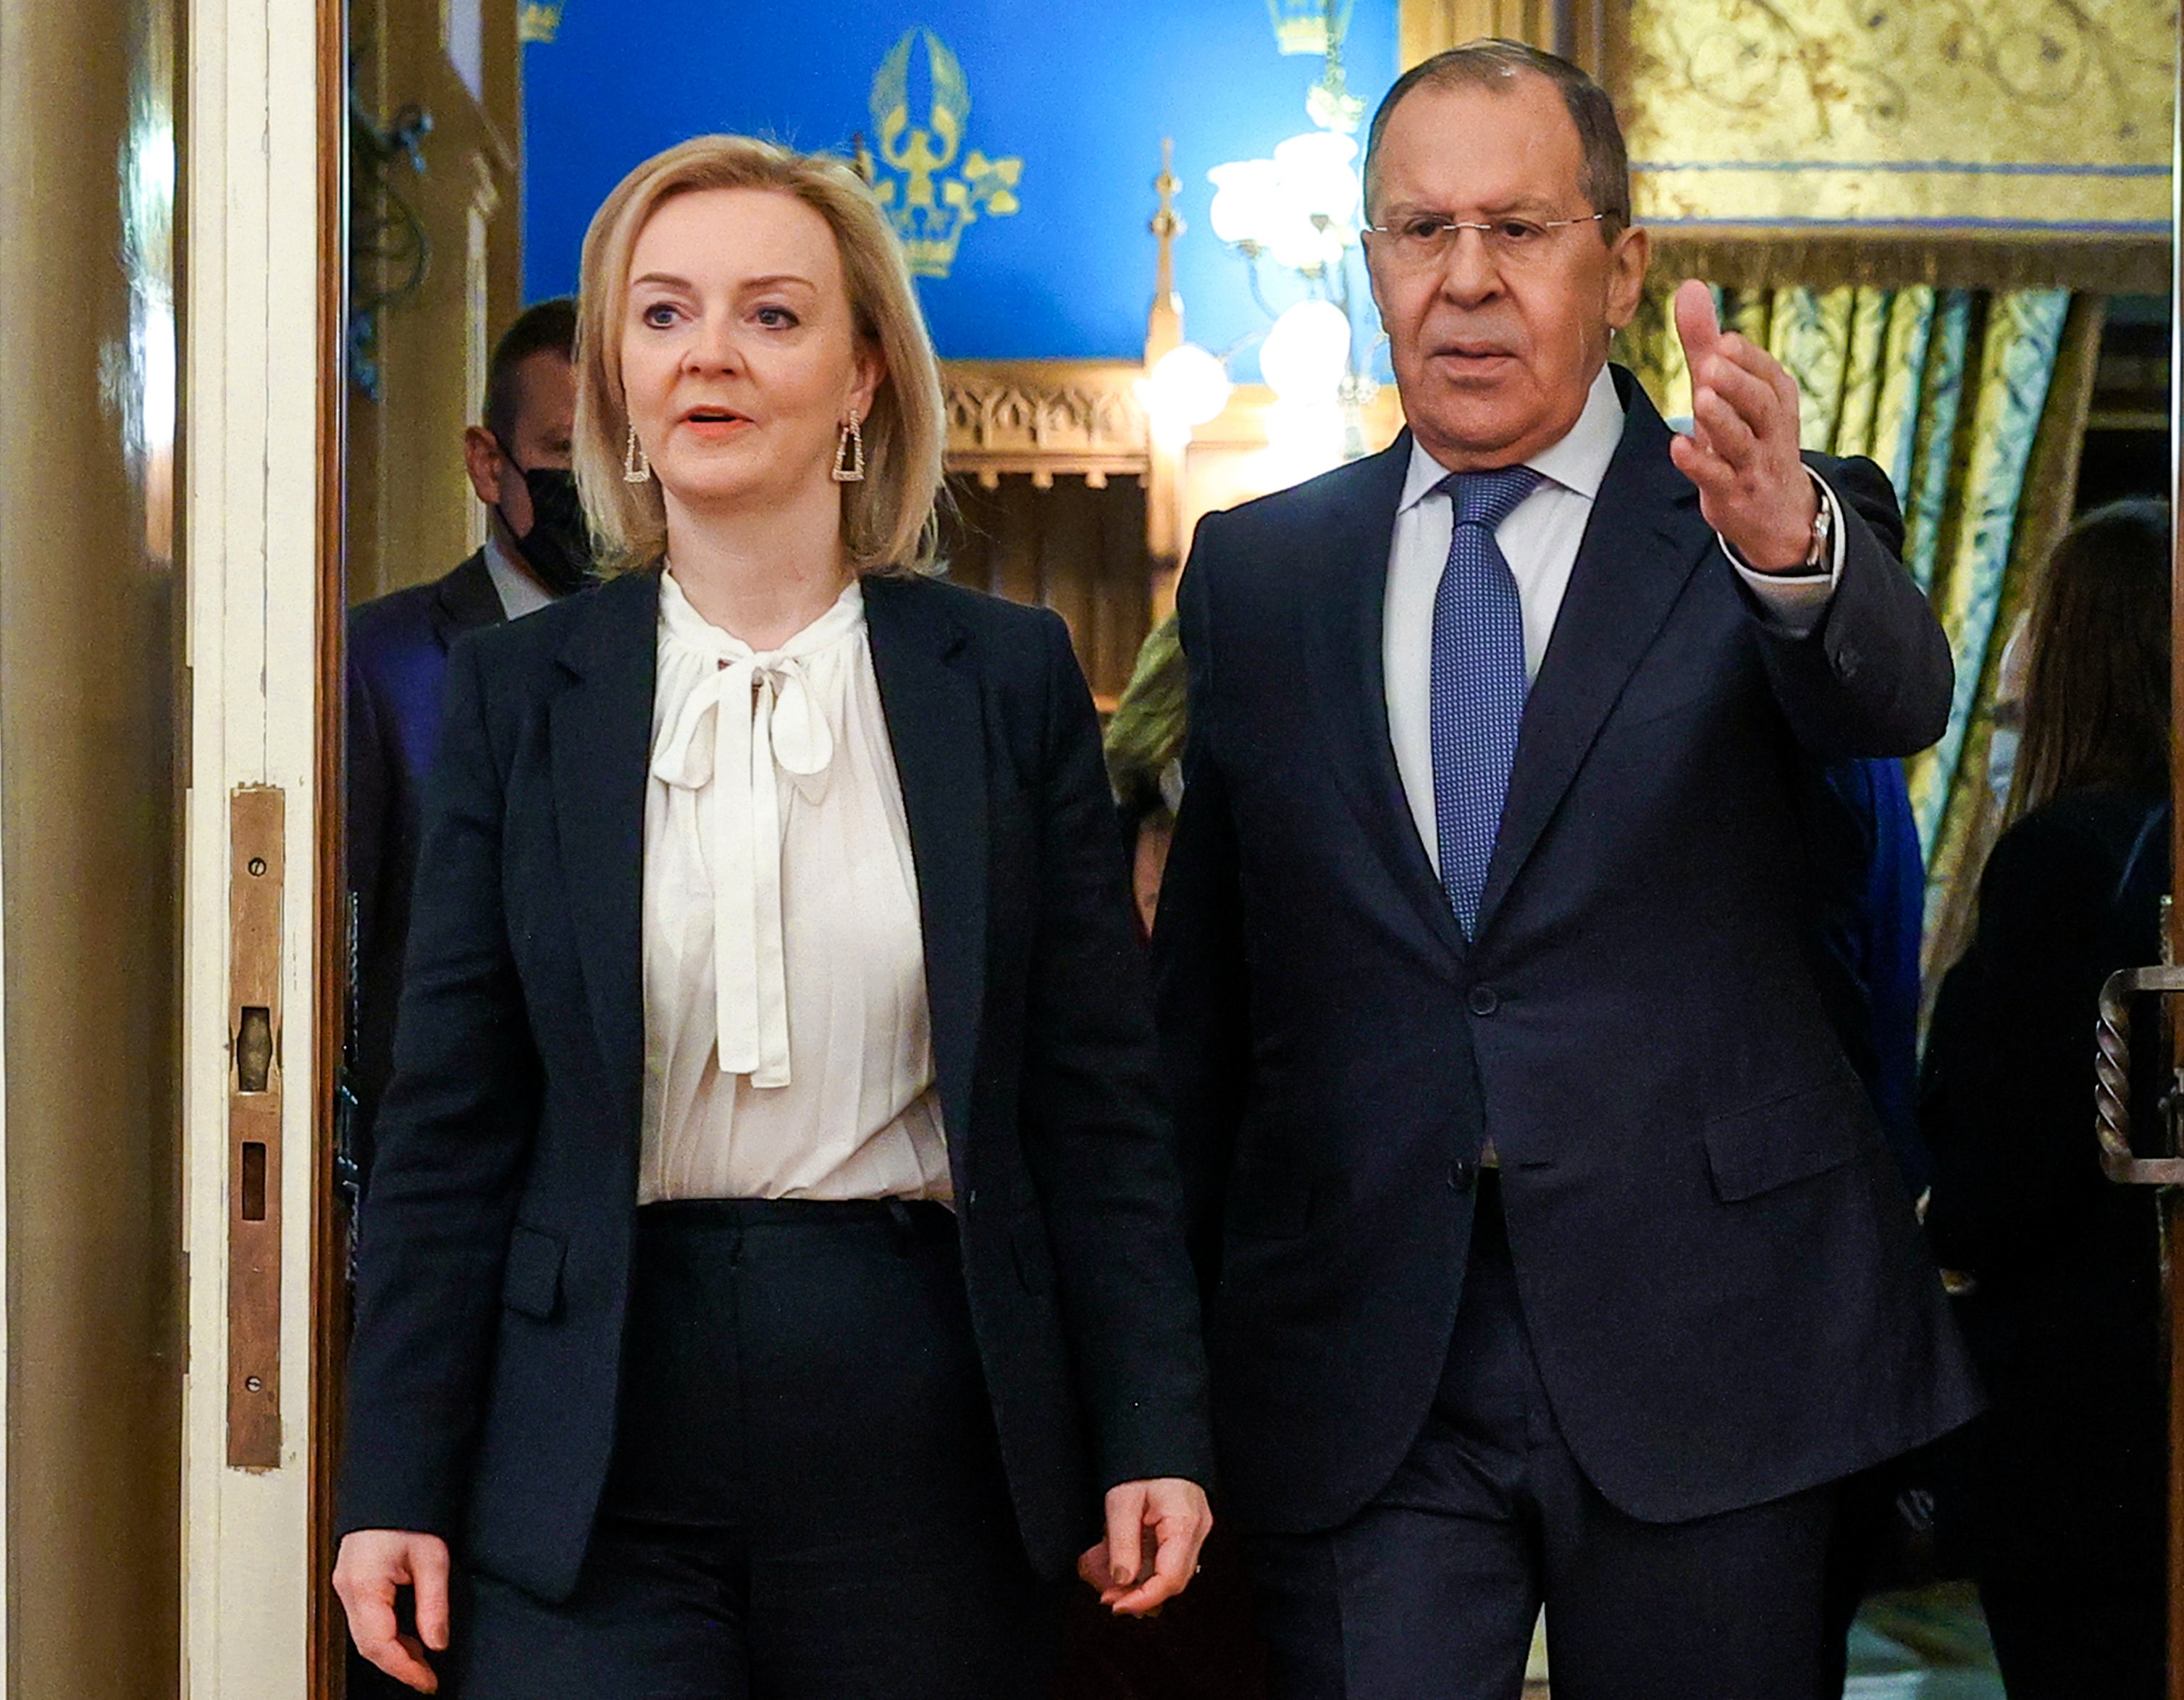 Liz Truss met with Sergei Lavrov last week